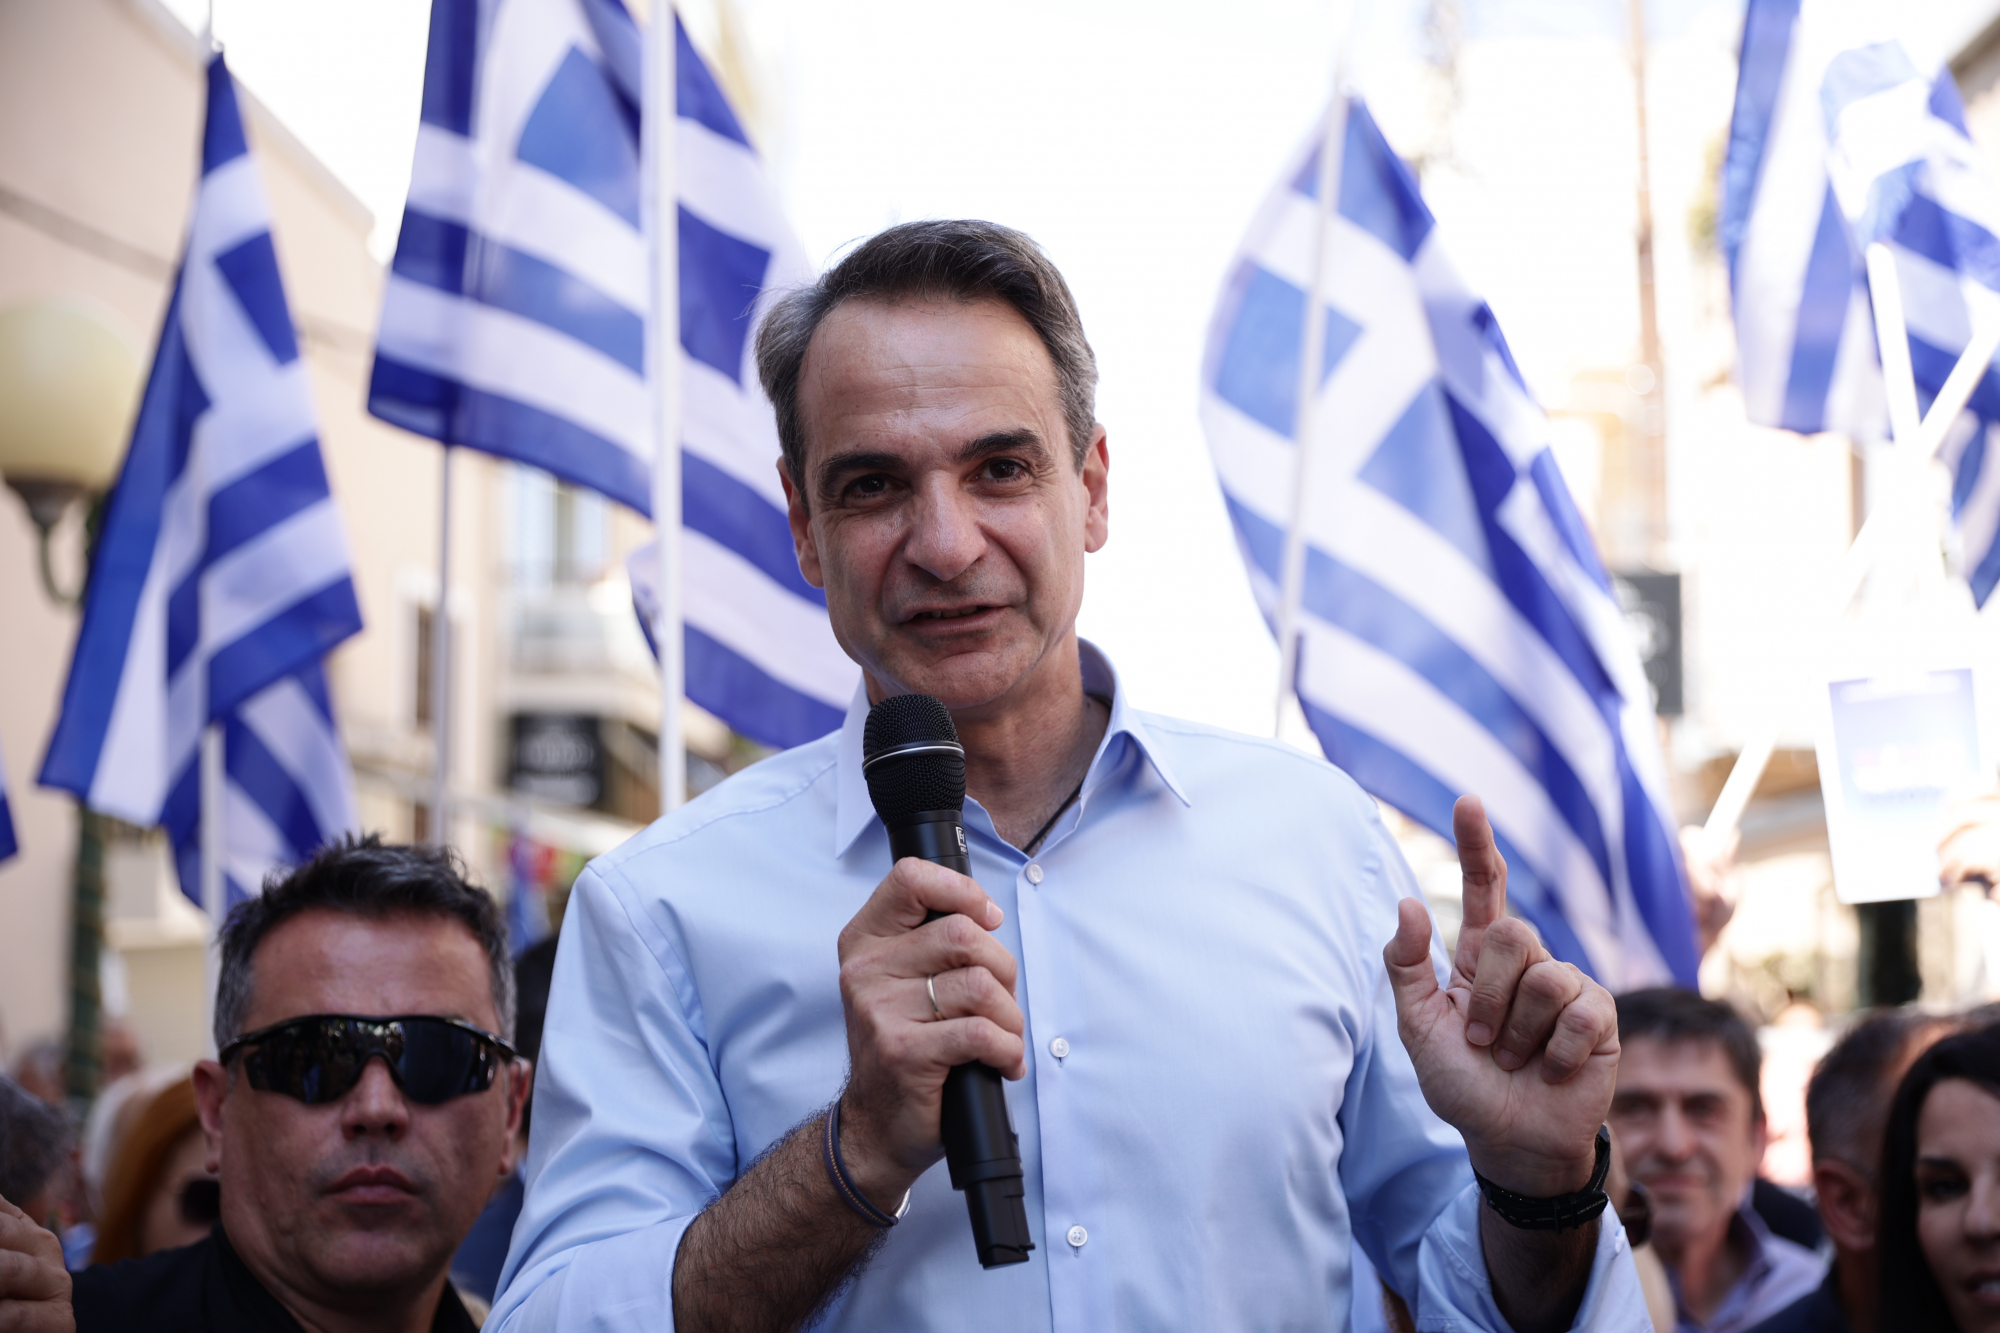 Εκλογές: «Νοικοκυρέψαμε την Ελλάδα» - Ο Μητσοτάκης ζήτησε να του δώσουν μεγαλύτερη νίκη στις 25 Ιουνίου